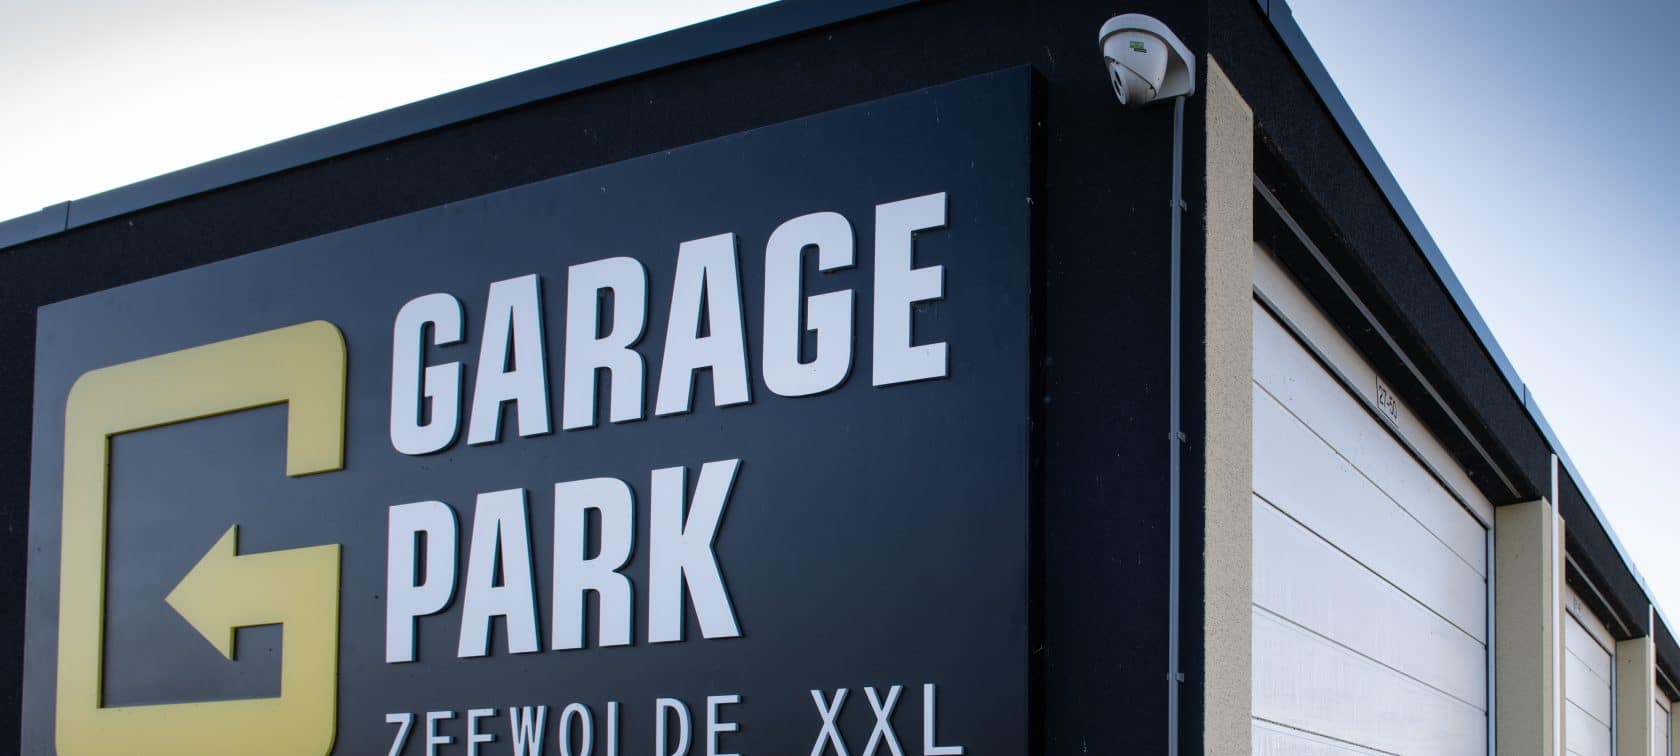 GaragePark Zeewolde XXL - Garageboxen Zeewolde XXL-2